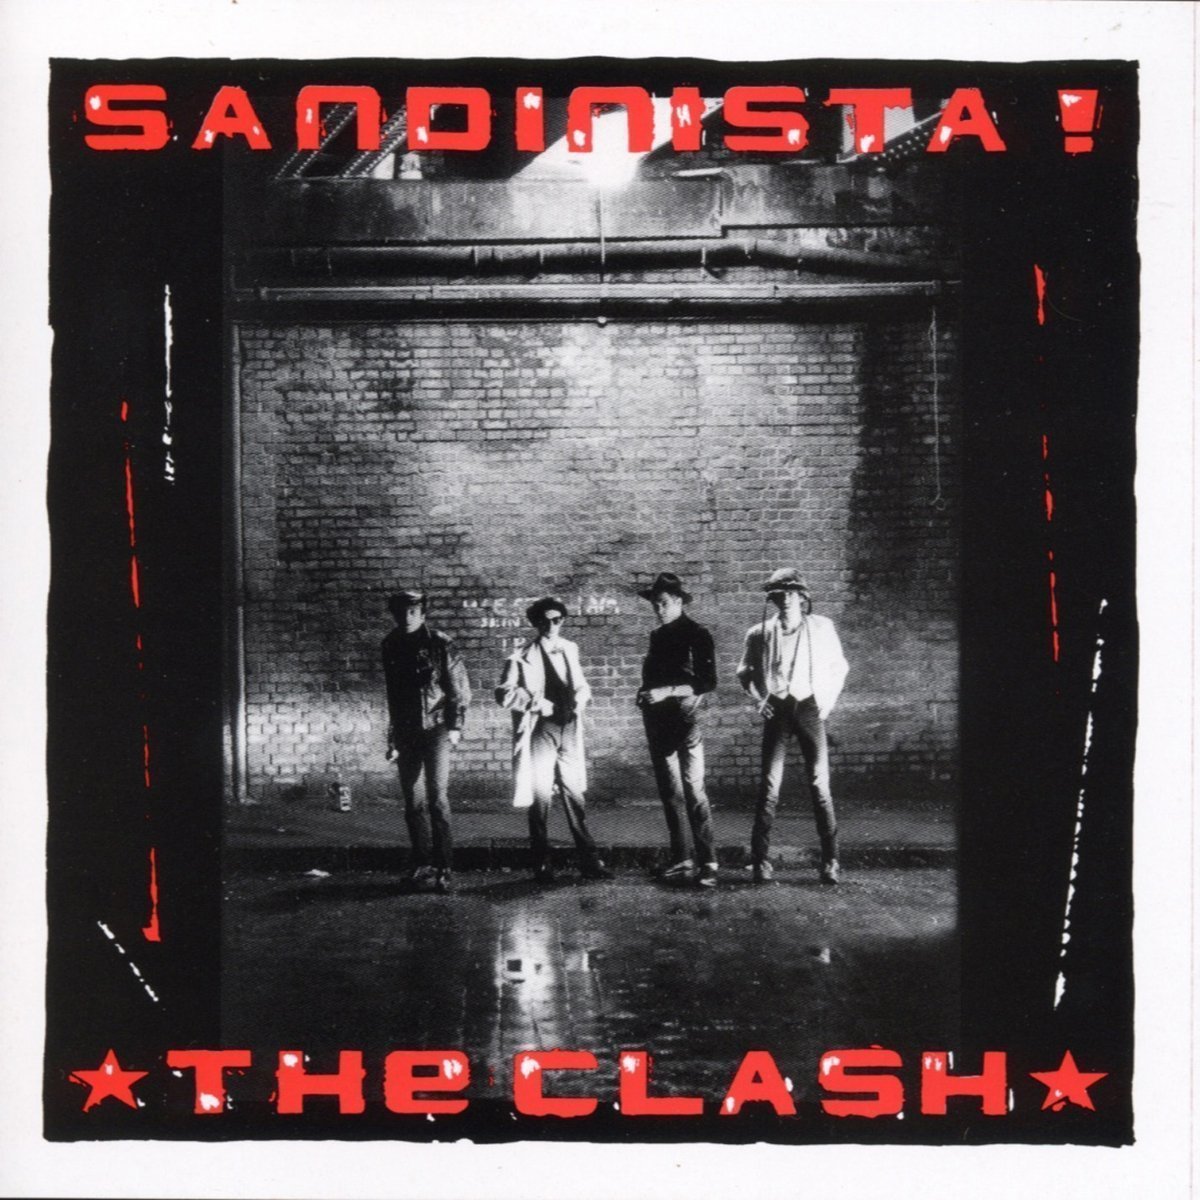 Vinyl Record The Clash Sandinista! (3 LP)